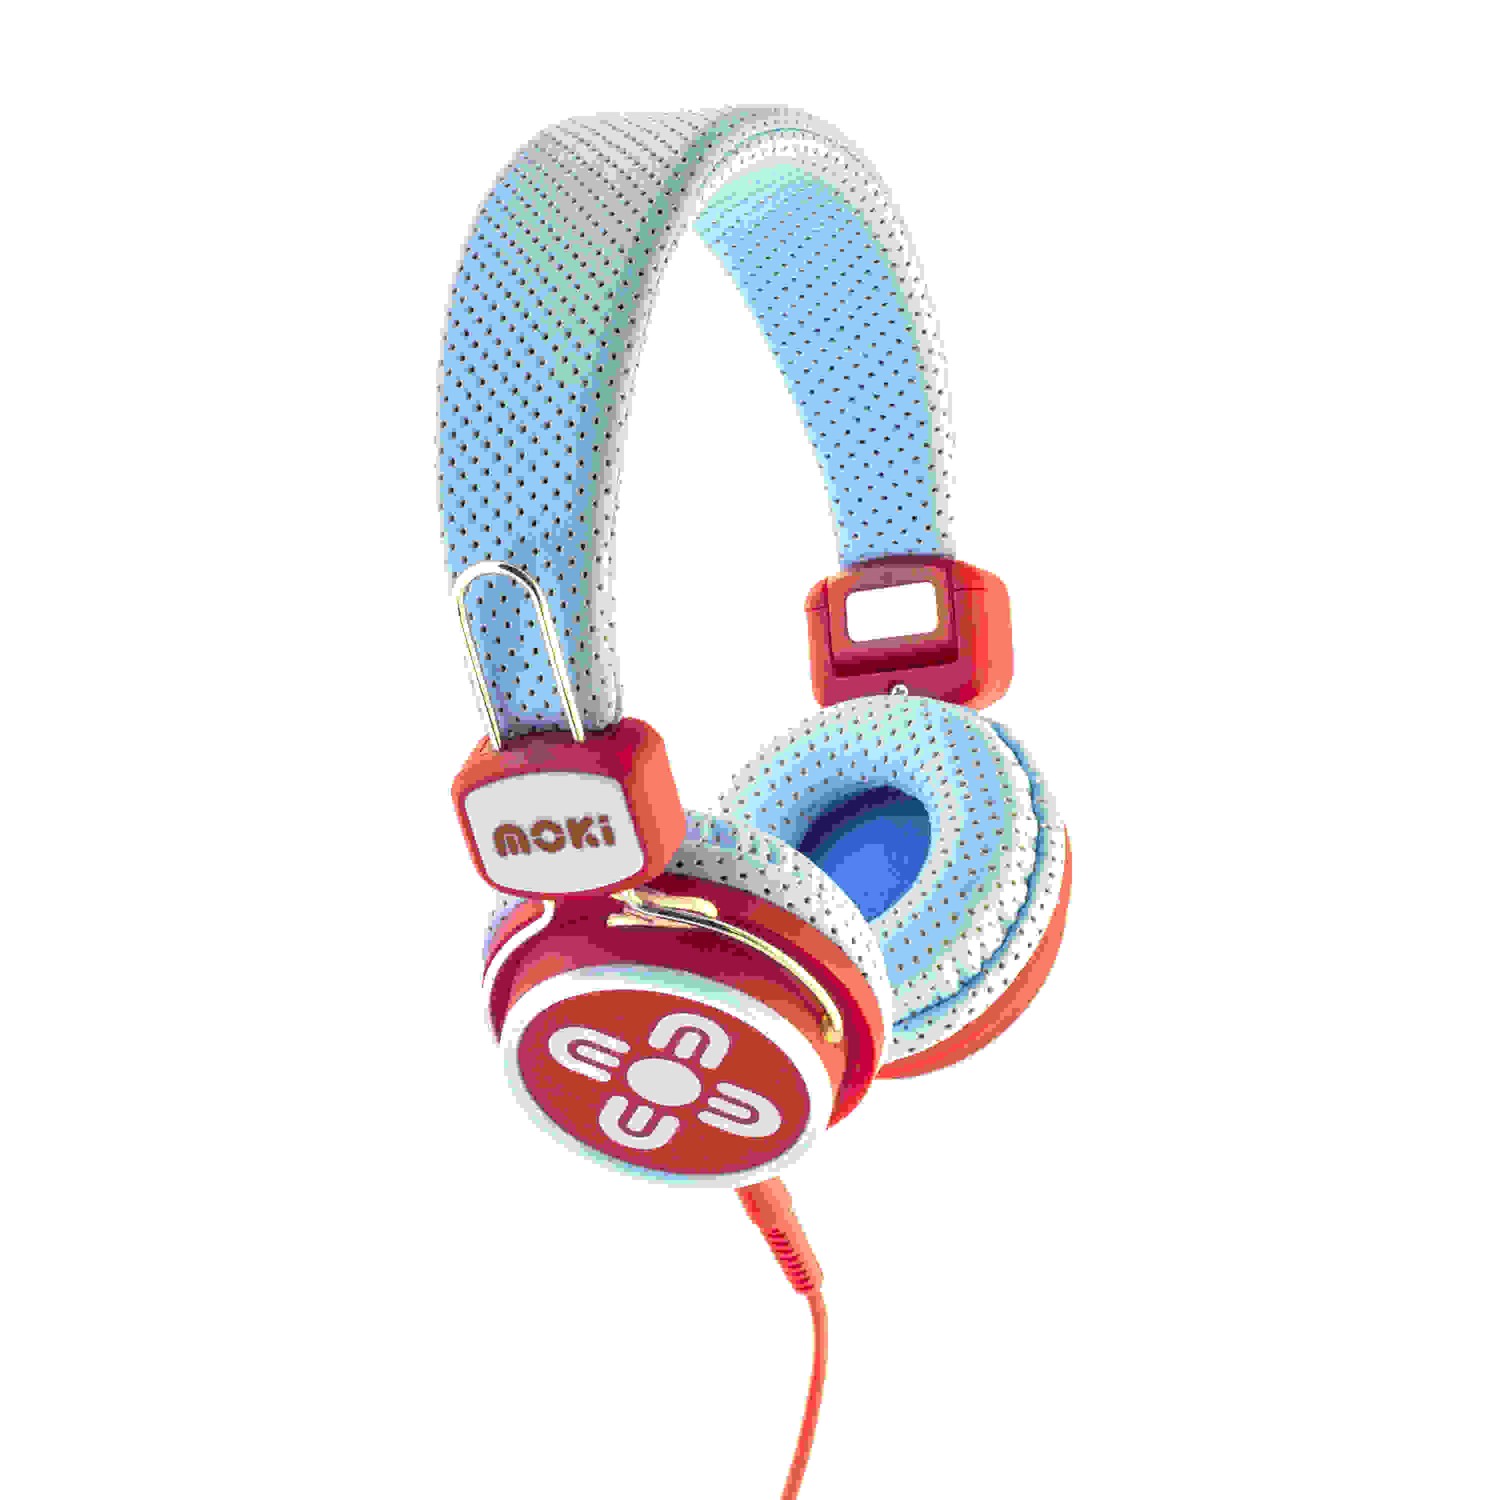 MOKI ACC HPKSBR BLUE/RED KIDS SAFE HEADPHONES